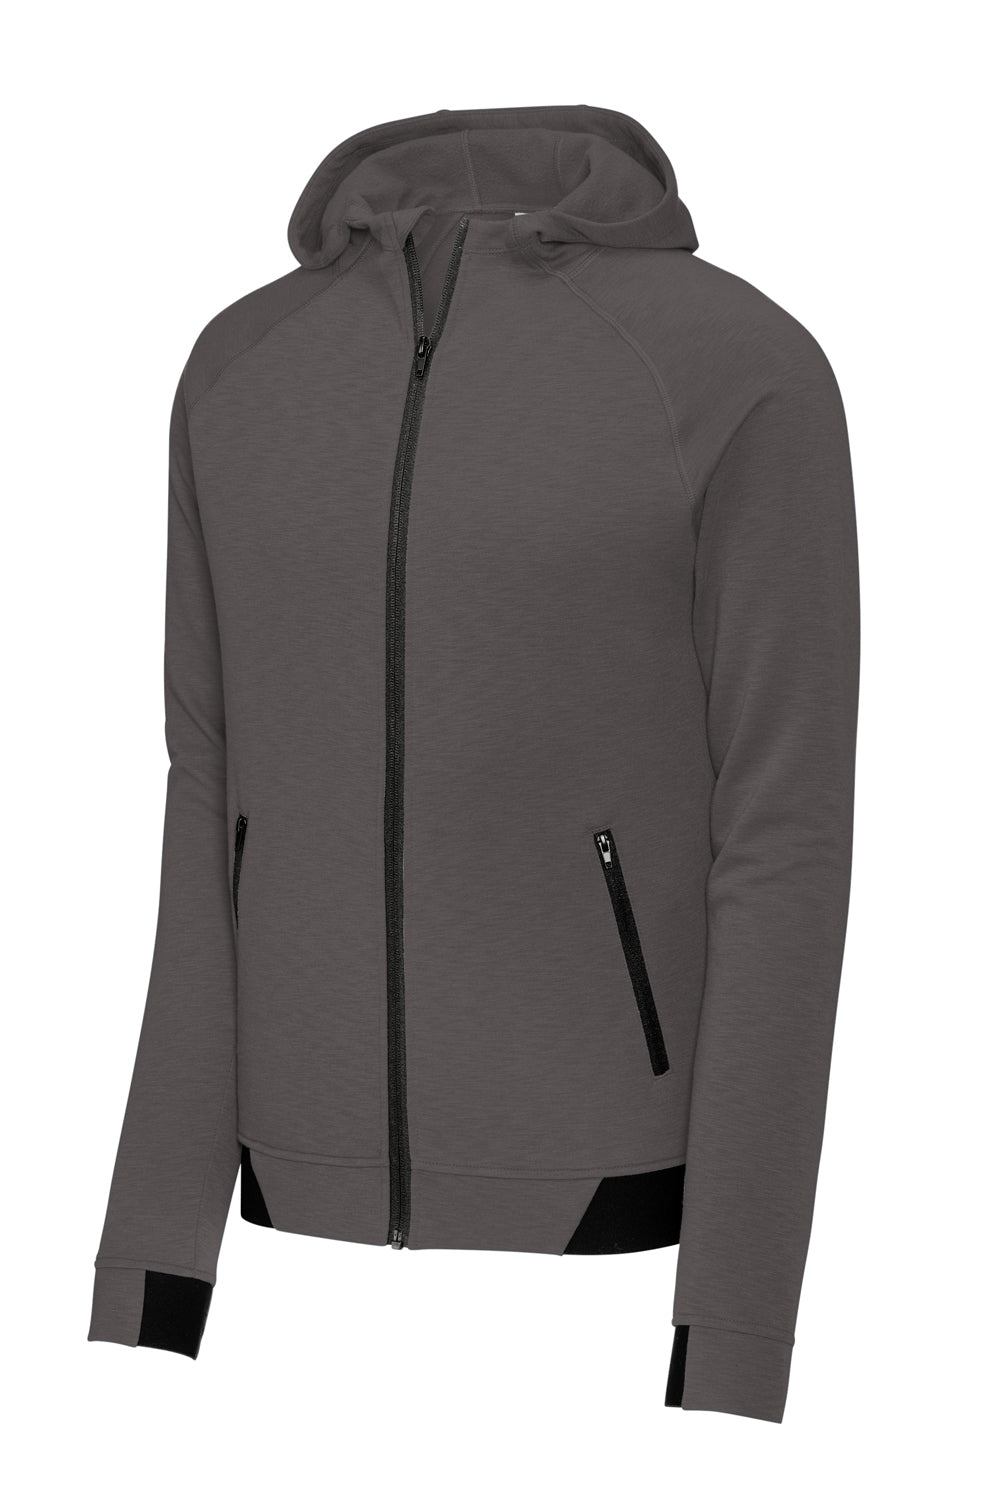 Sport-Tek ST570 Strive PosiCharge Full Zip Hooded Sweatshirt Hoodie Graphite Grey Flat Front